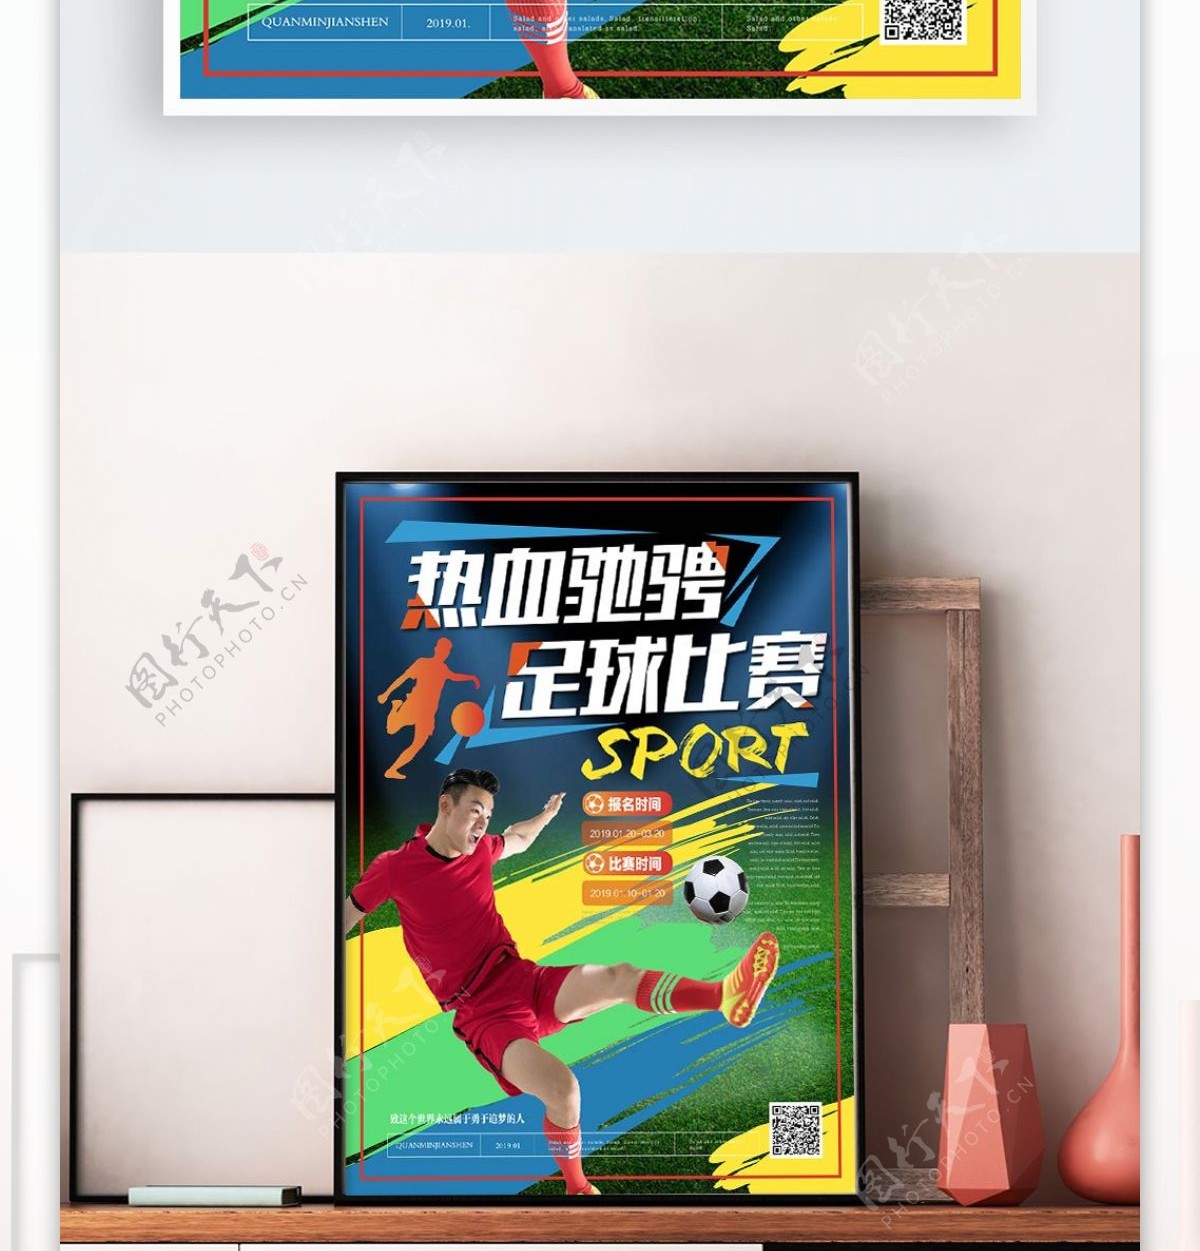 简约活力热血驰骋足球比赛海报